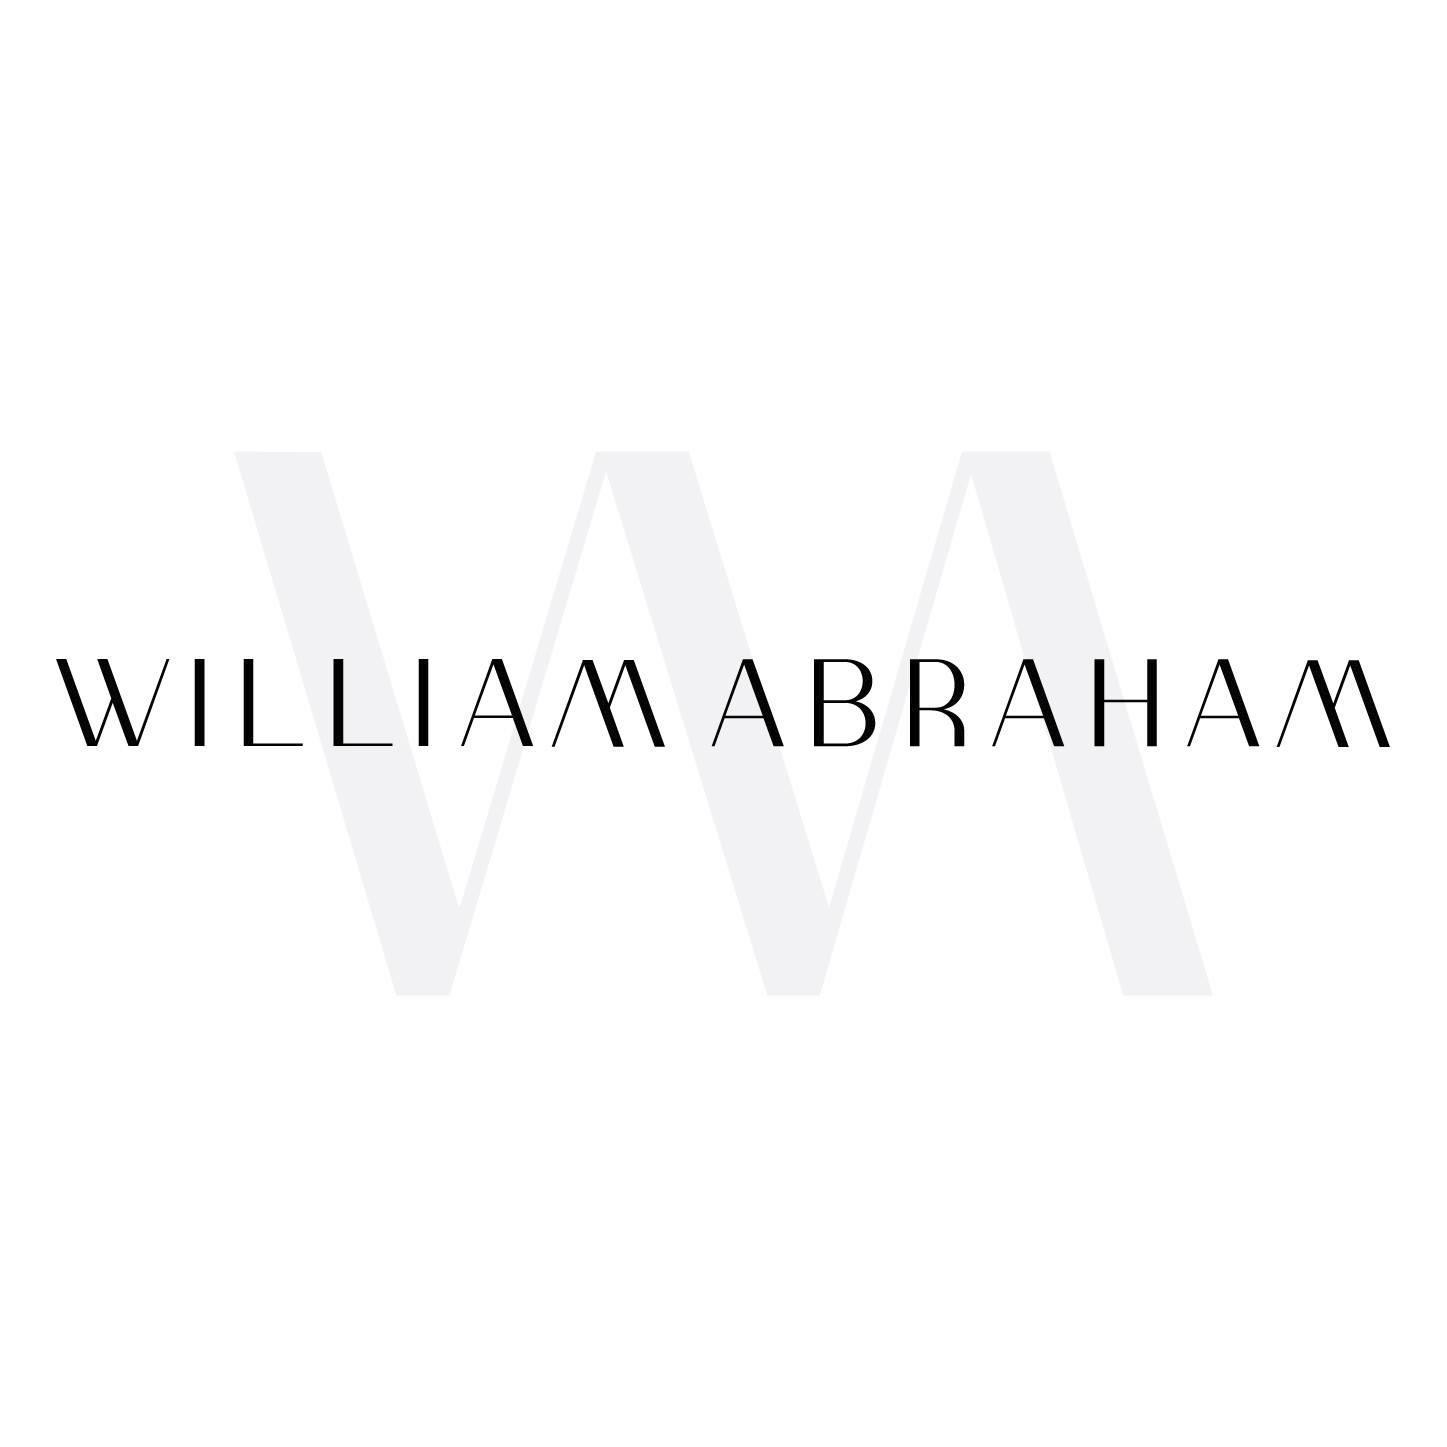 William Abraham